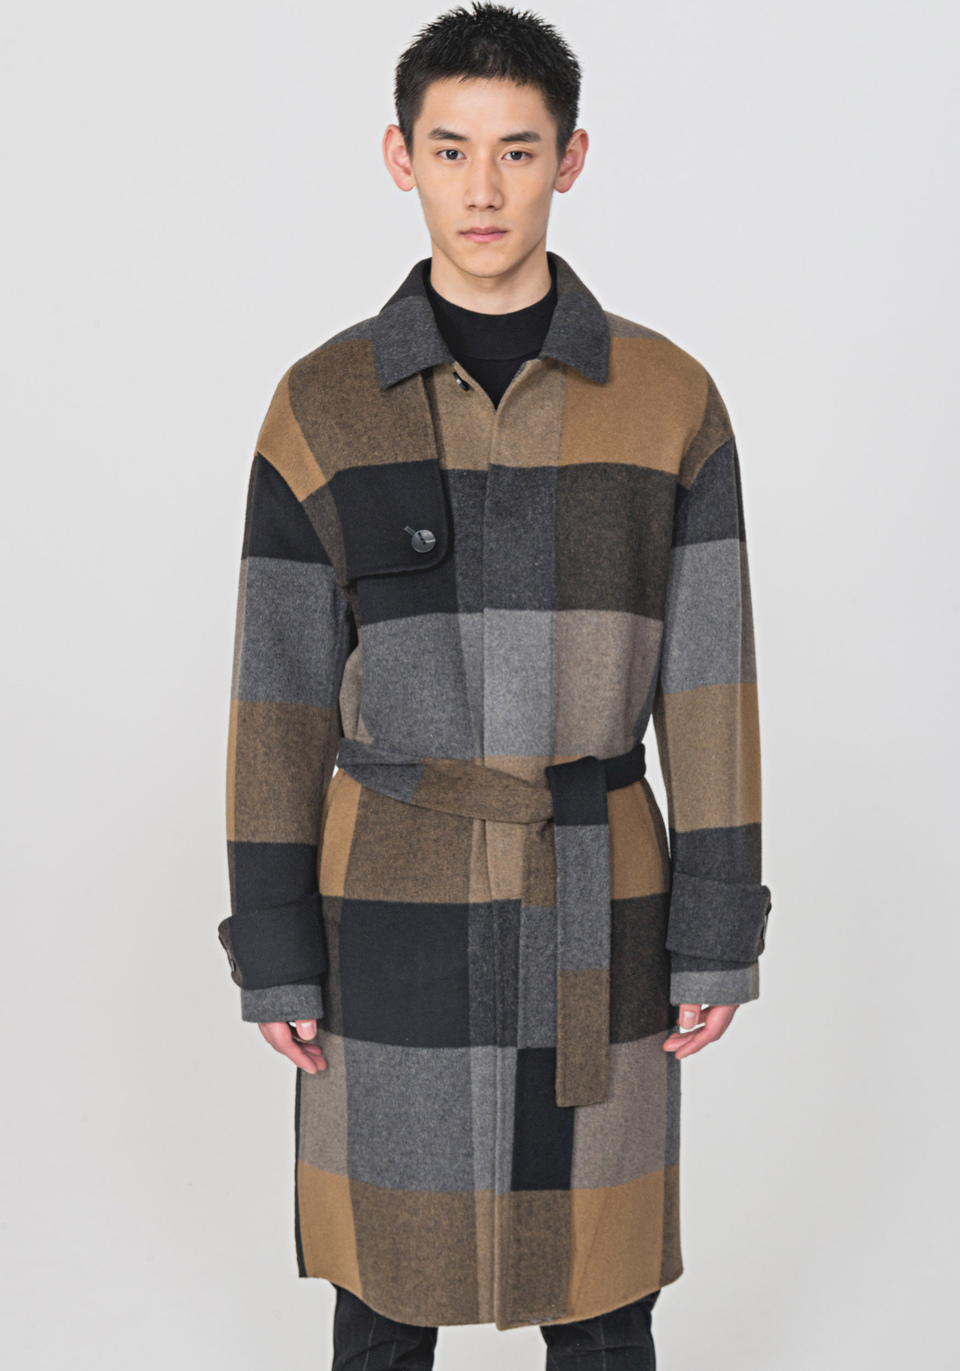 LONG COAT IN A SOFT WARM WOOL BLEND - Antony Morato Online Shop